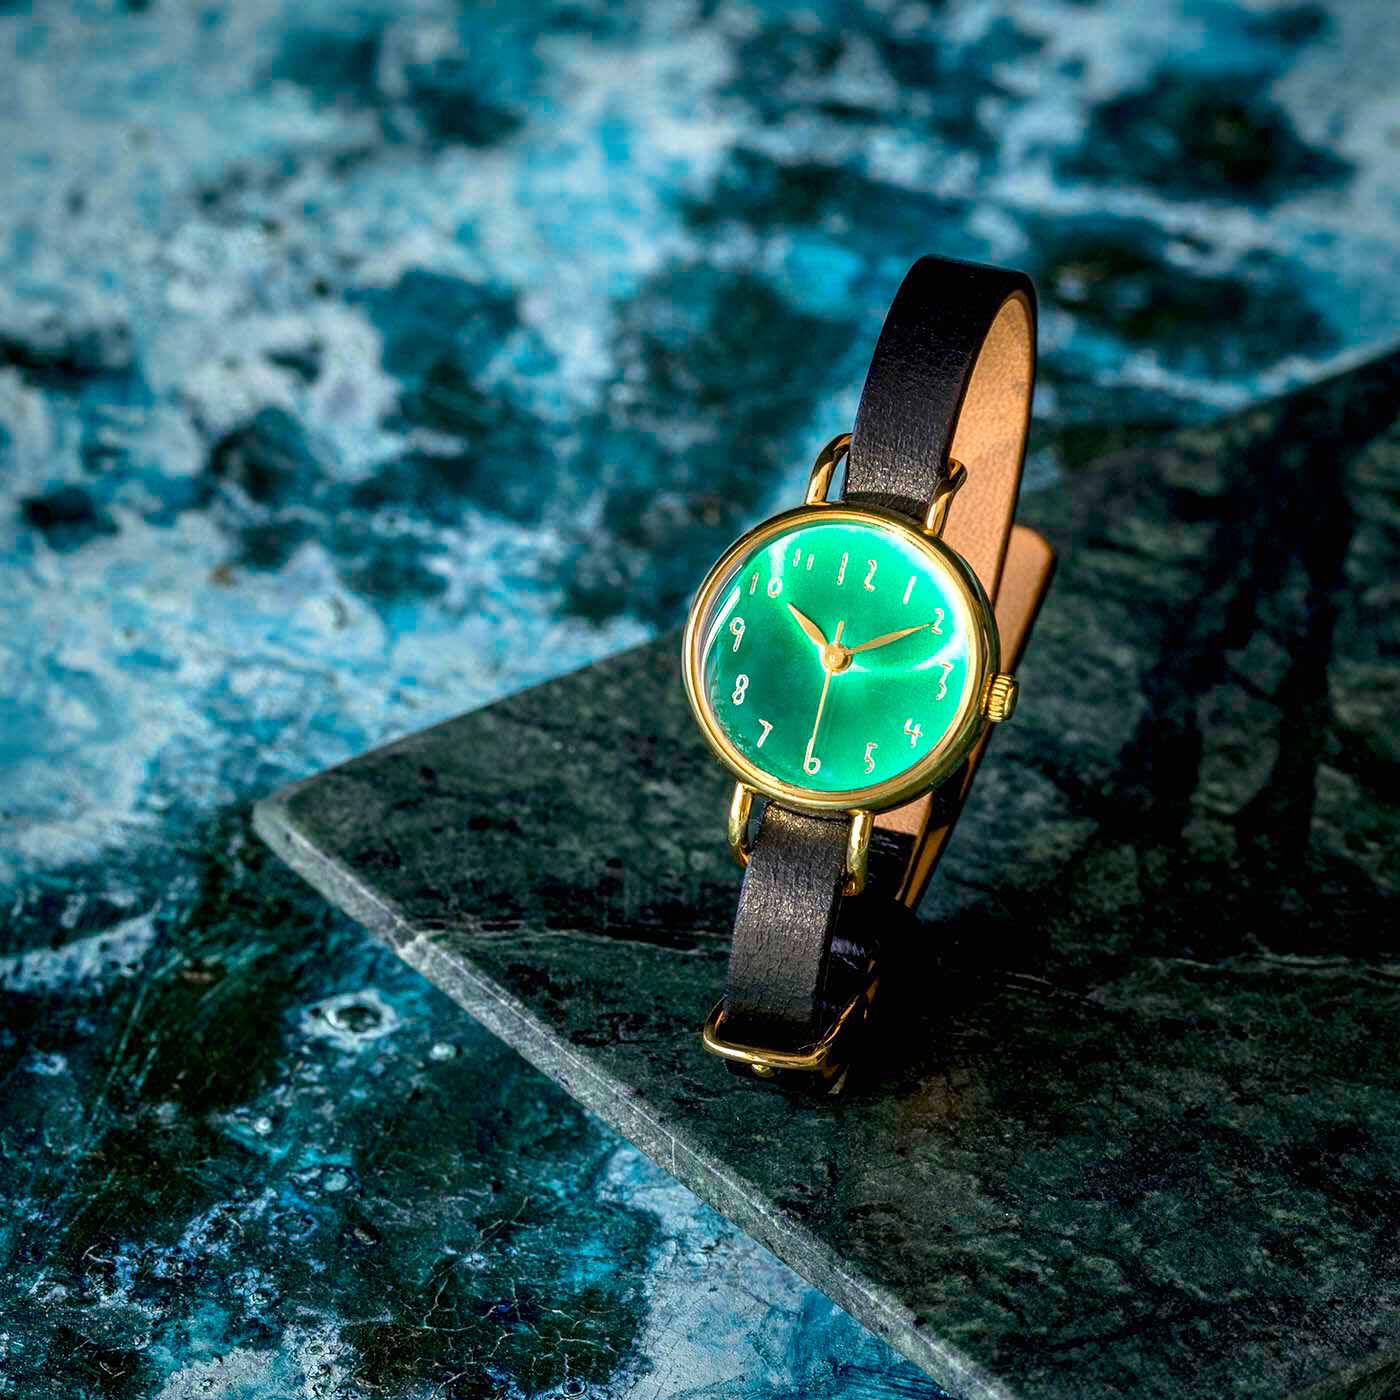 ＆Stories|金沢の時計職人が手掛けた　聖なる森の翠色に見惚れる腕時計〈ブラック〉|時計工房のアートディレクター・牛島孝さんが聖域のように密やかな森を、美しい翠色で時計の文字盤に表現してくださいました。